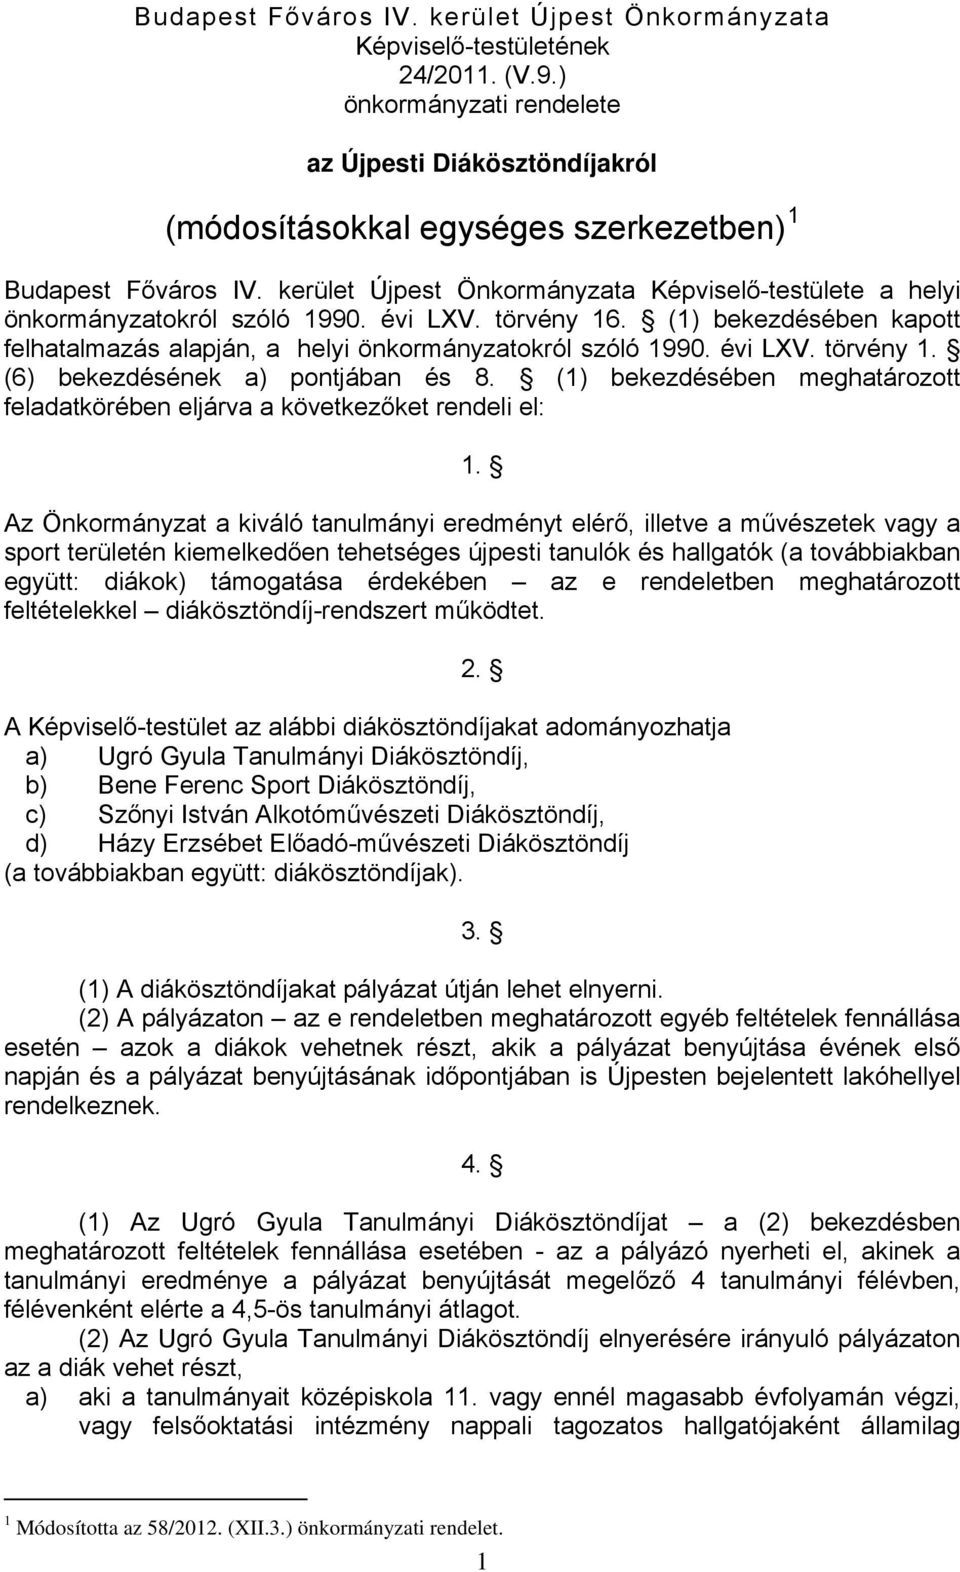 kerület Újpest Önkormányzata Képviselő-testülete a helyi önkormányzatokról szóló 1990. évi LXV. törvény 16. (1) bekezdésében kapott felhatalmazás alapján, a helyi önkormányzatokról szóló 1990.